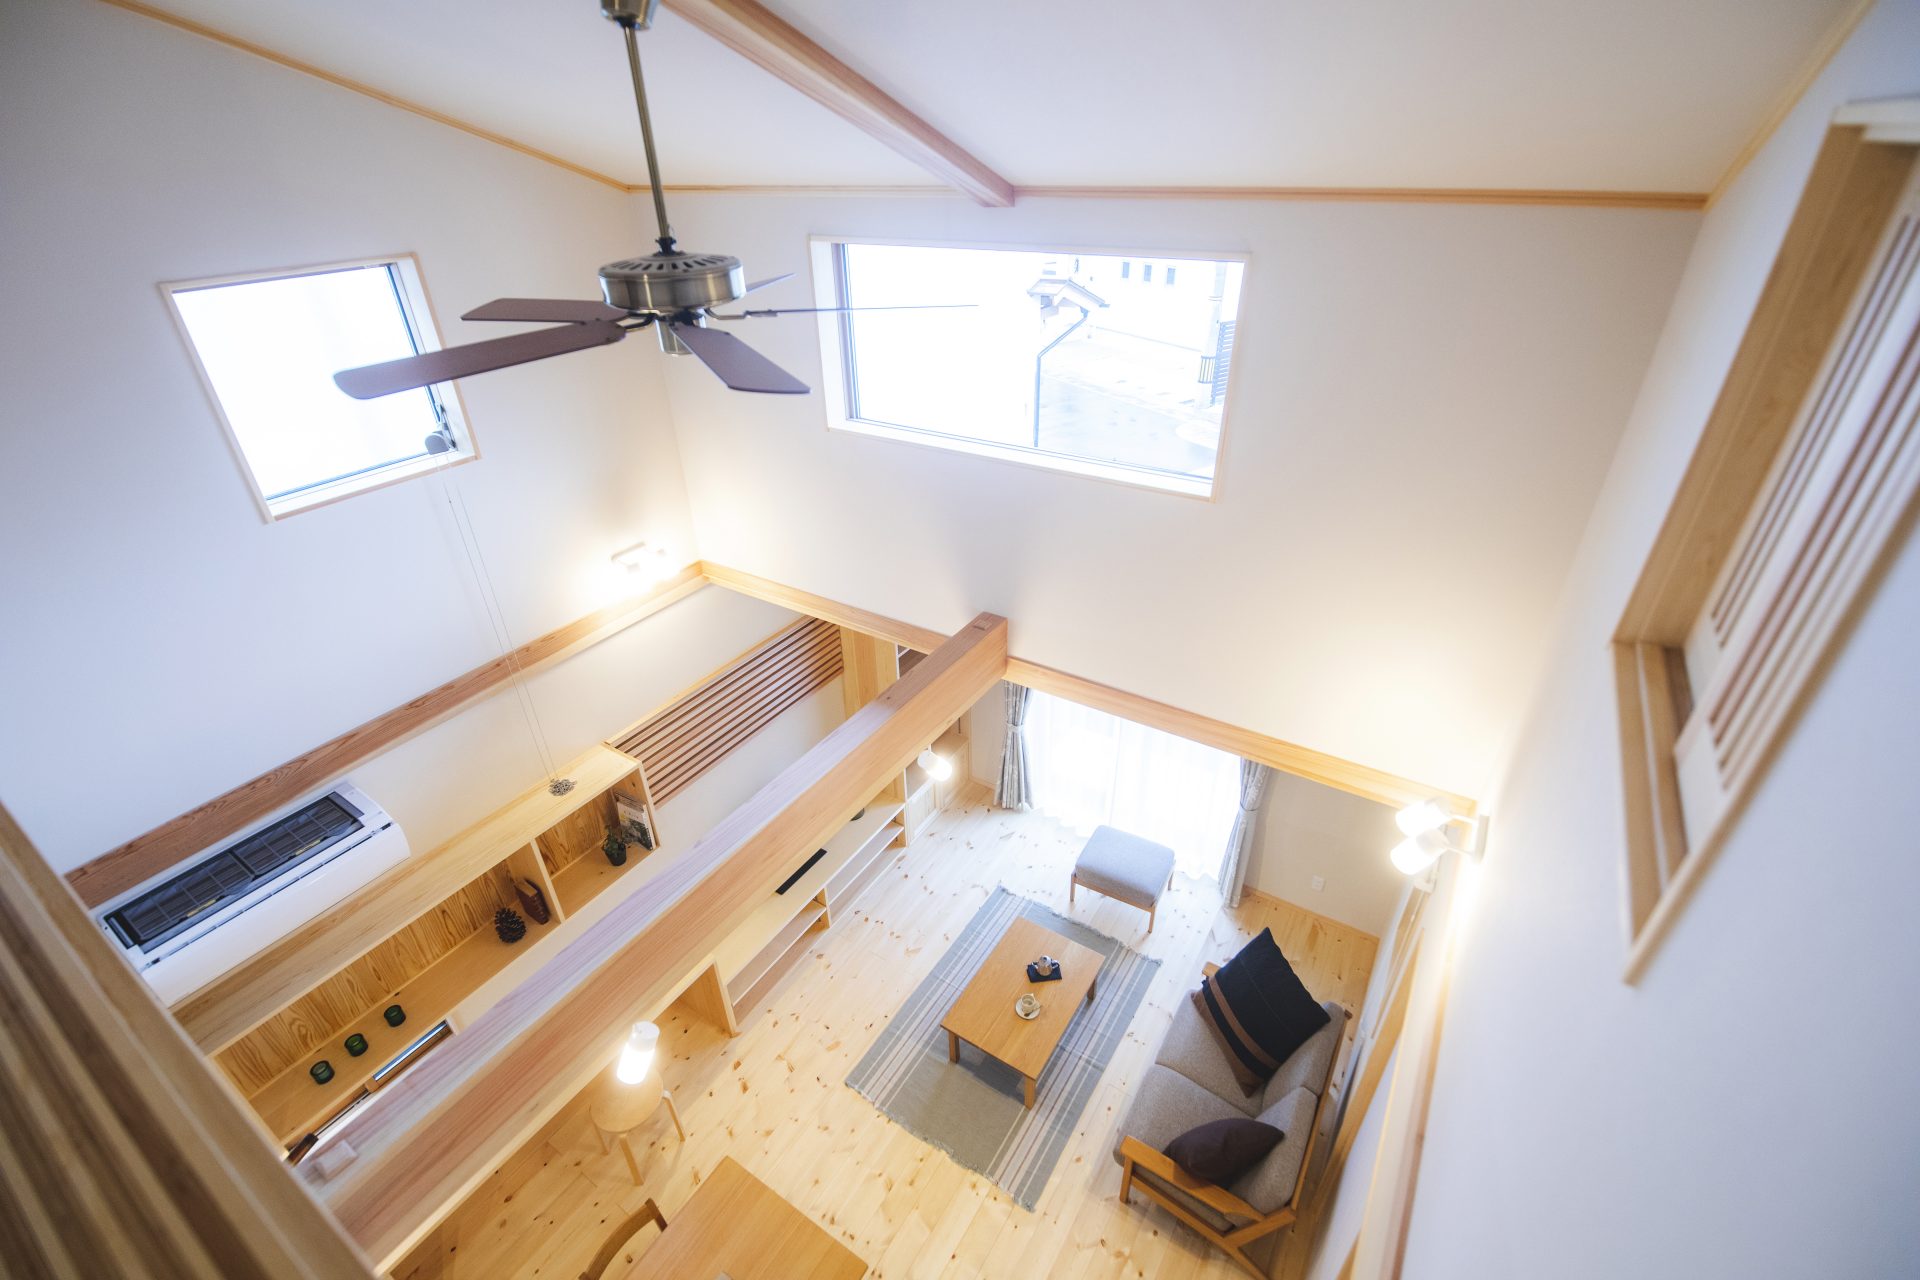 Căn nhà gỗ xây dựng theo lối kiến trúc Nhật Bản với 1 trệt 1 lửng đủ bình yên cho gia đình trẻ - Ảnh 4.